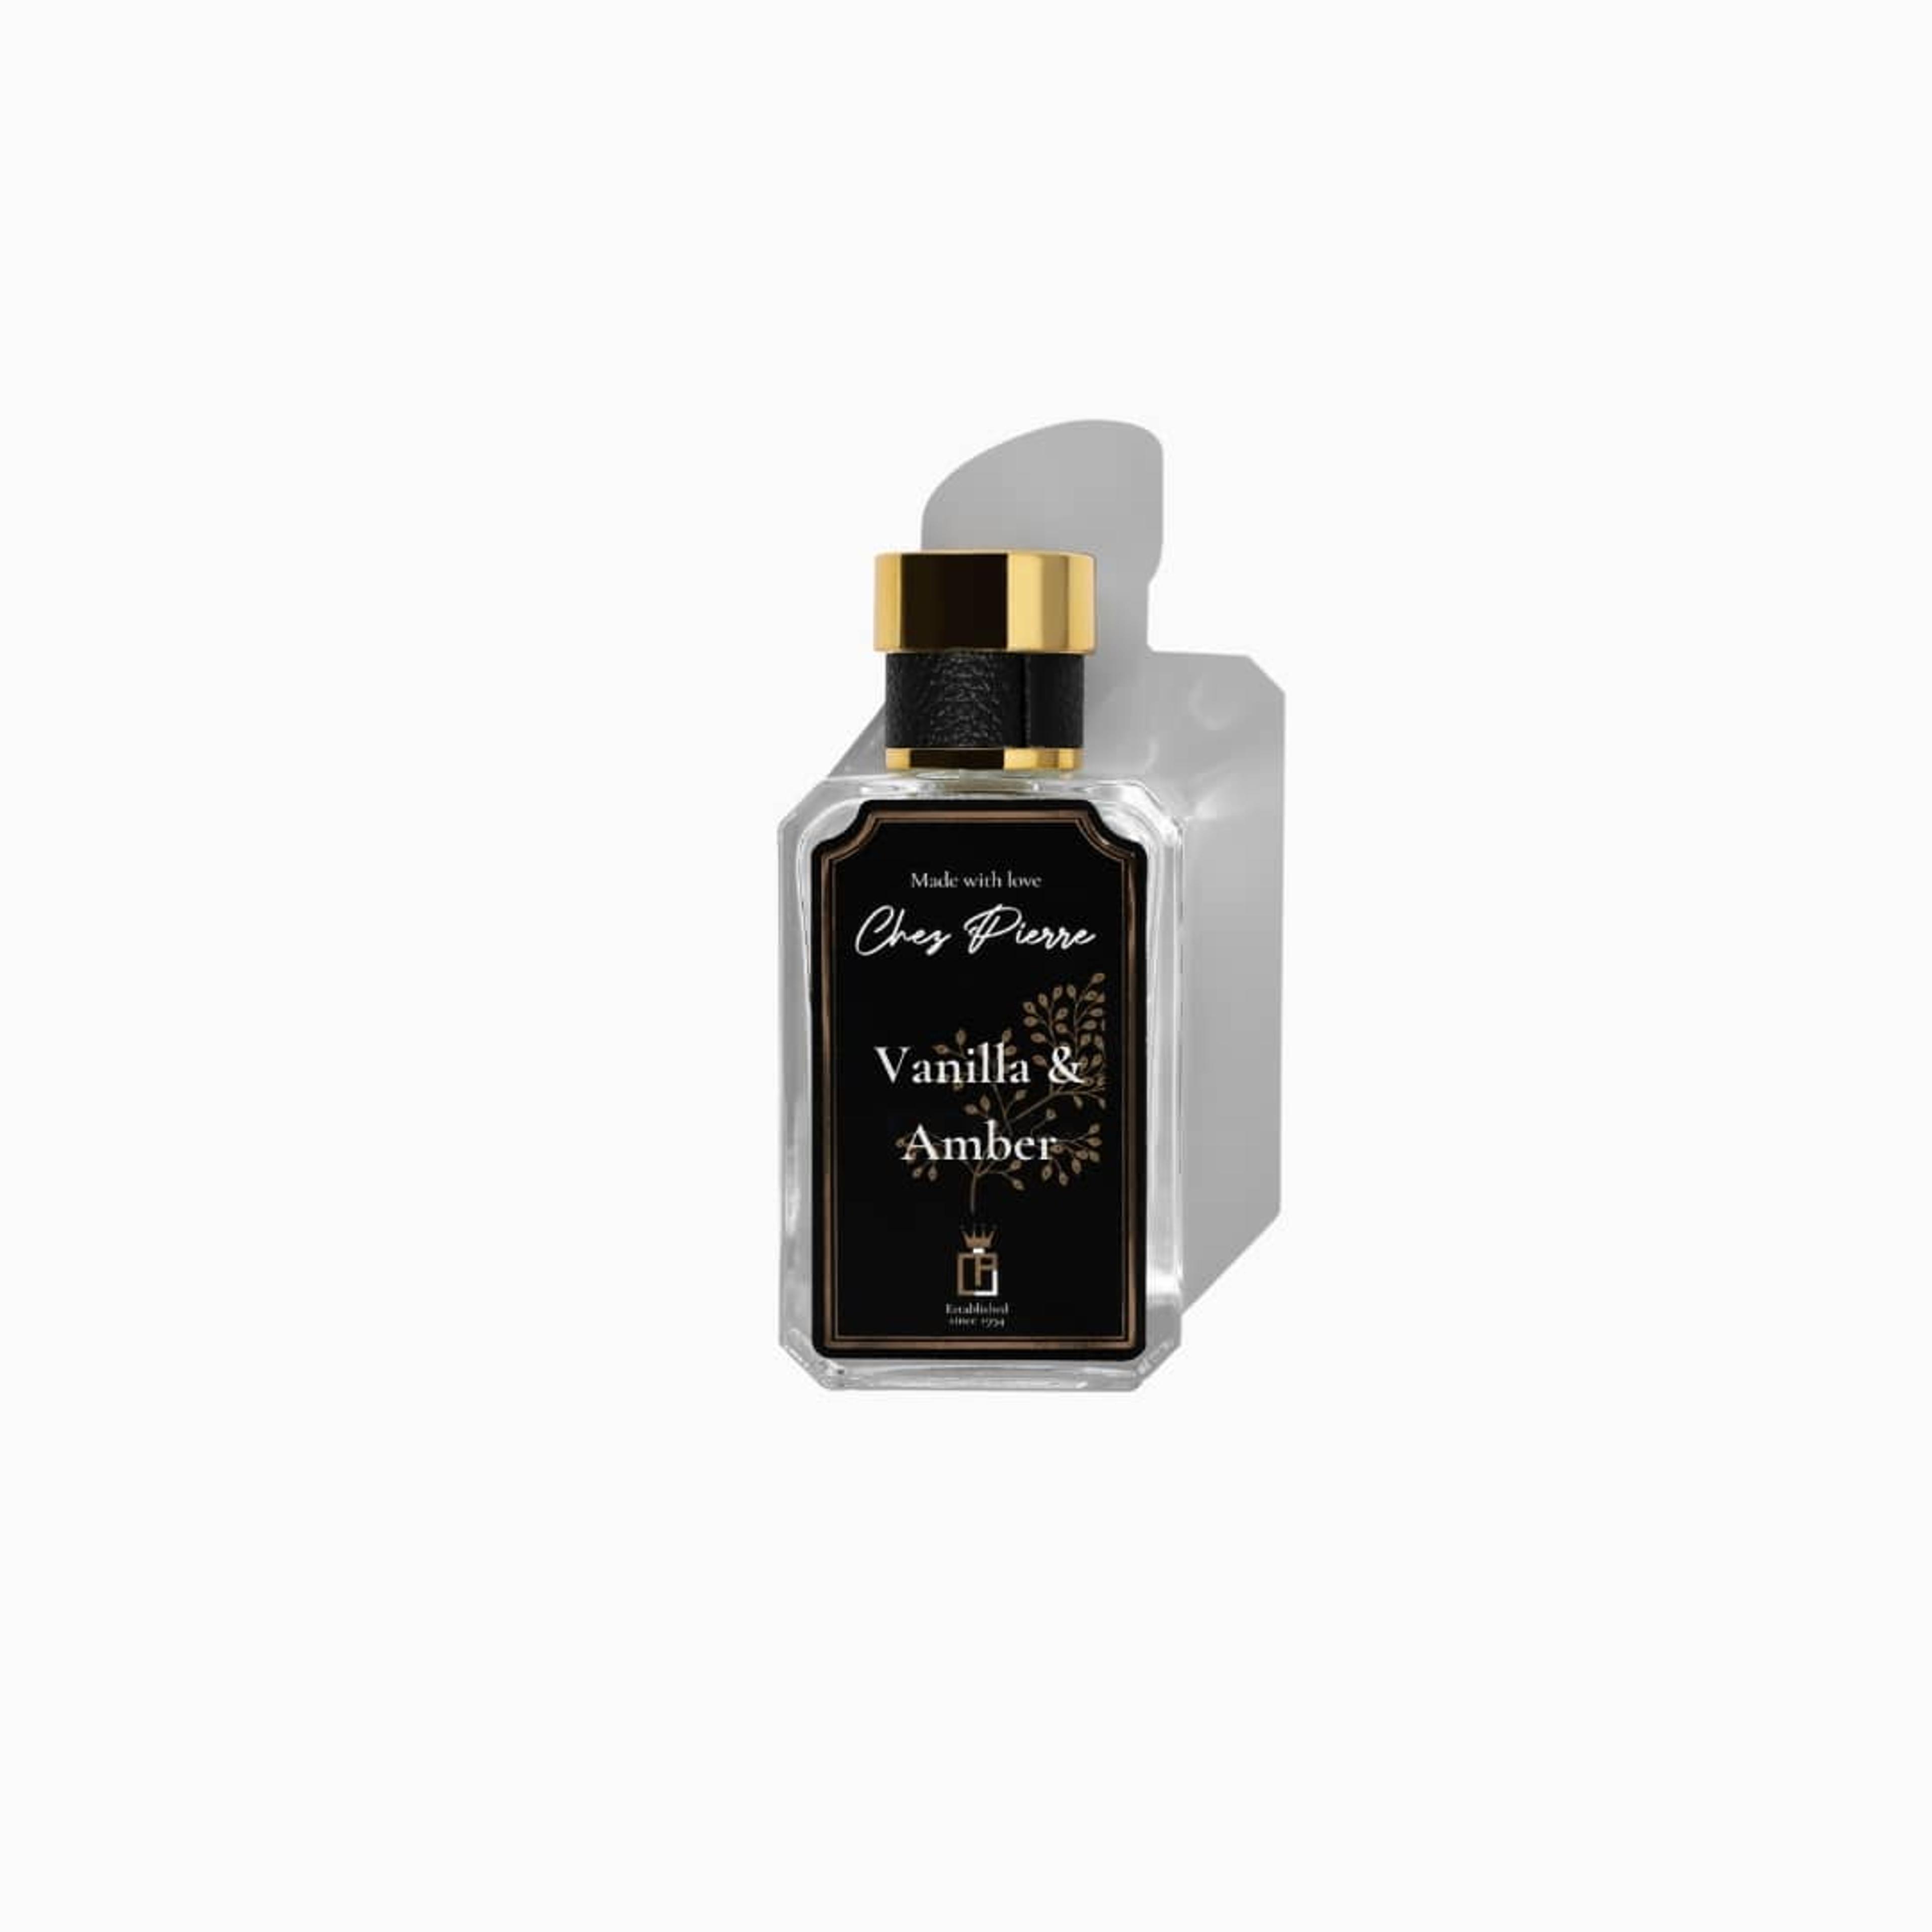 Chez Pierre's Vanilla and Amber Perfume Inspired By Myrrh & Tonka